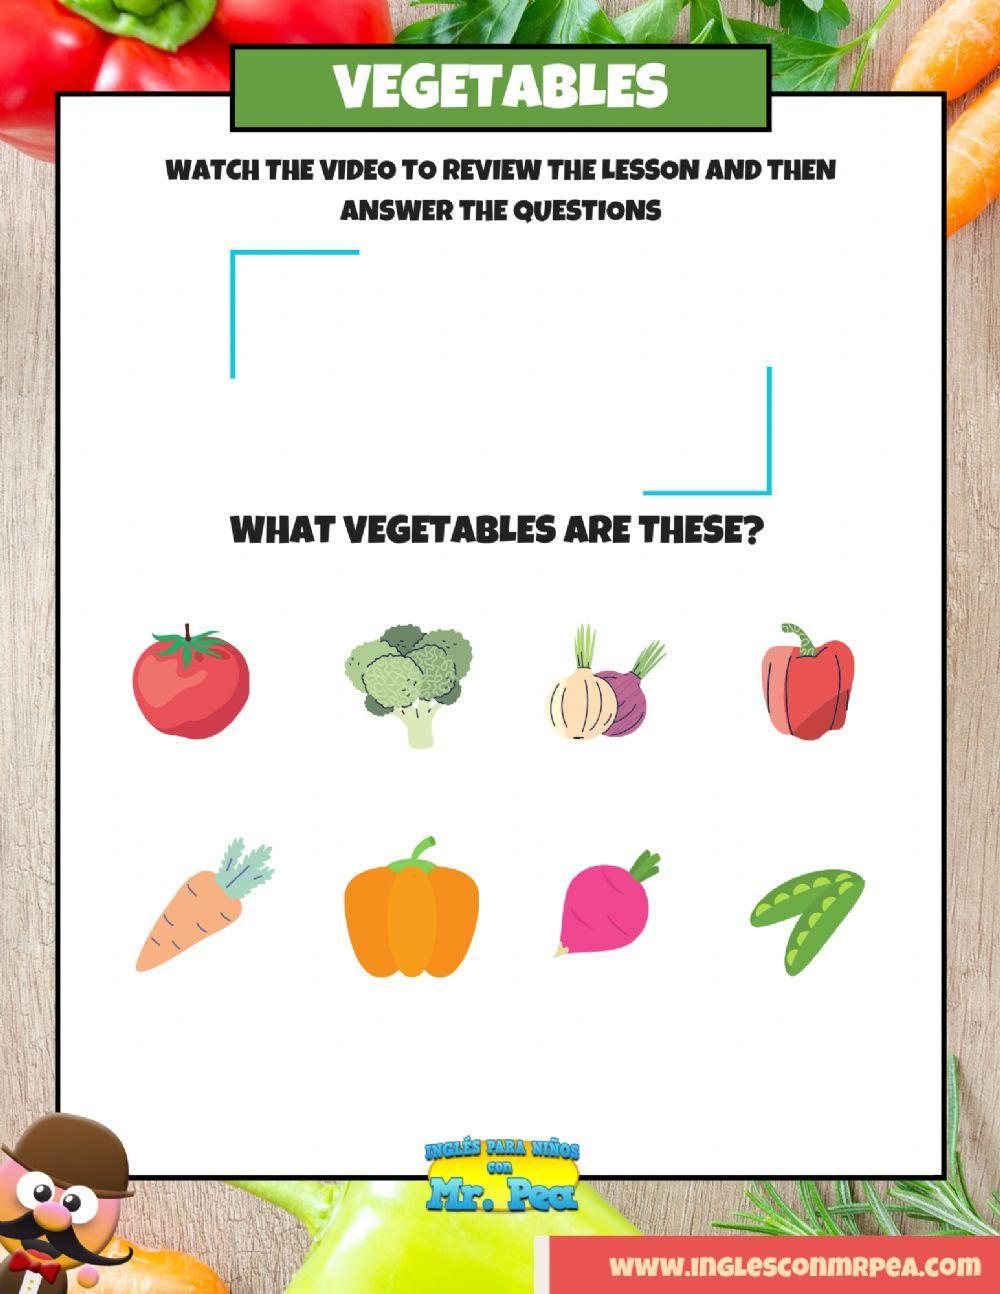 Vegetables (verduras en inglés) - inglés para niños con mr. pea